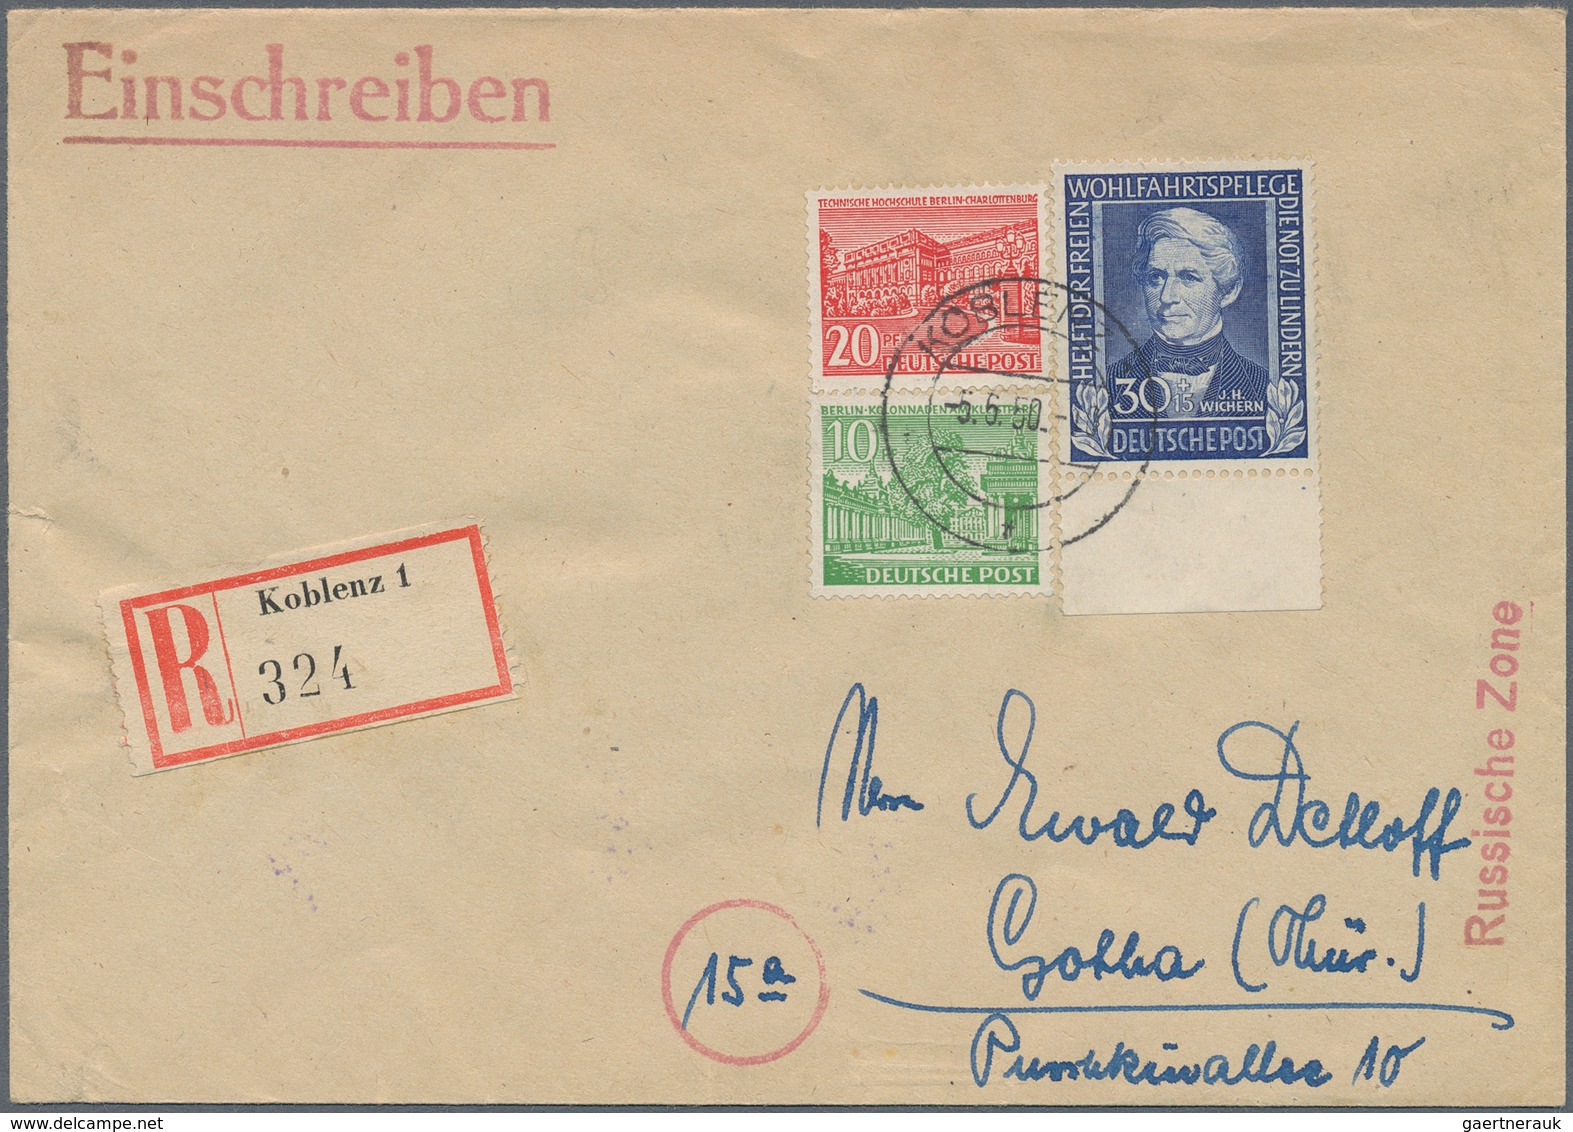 Deutschland nach 1945: 1948/1960, Bizone bis Bund, umfangreiche Sammlung von über 500 Belegen mit za